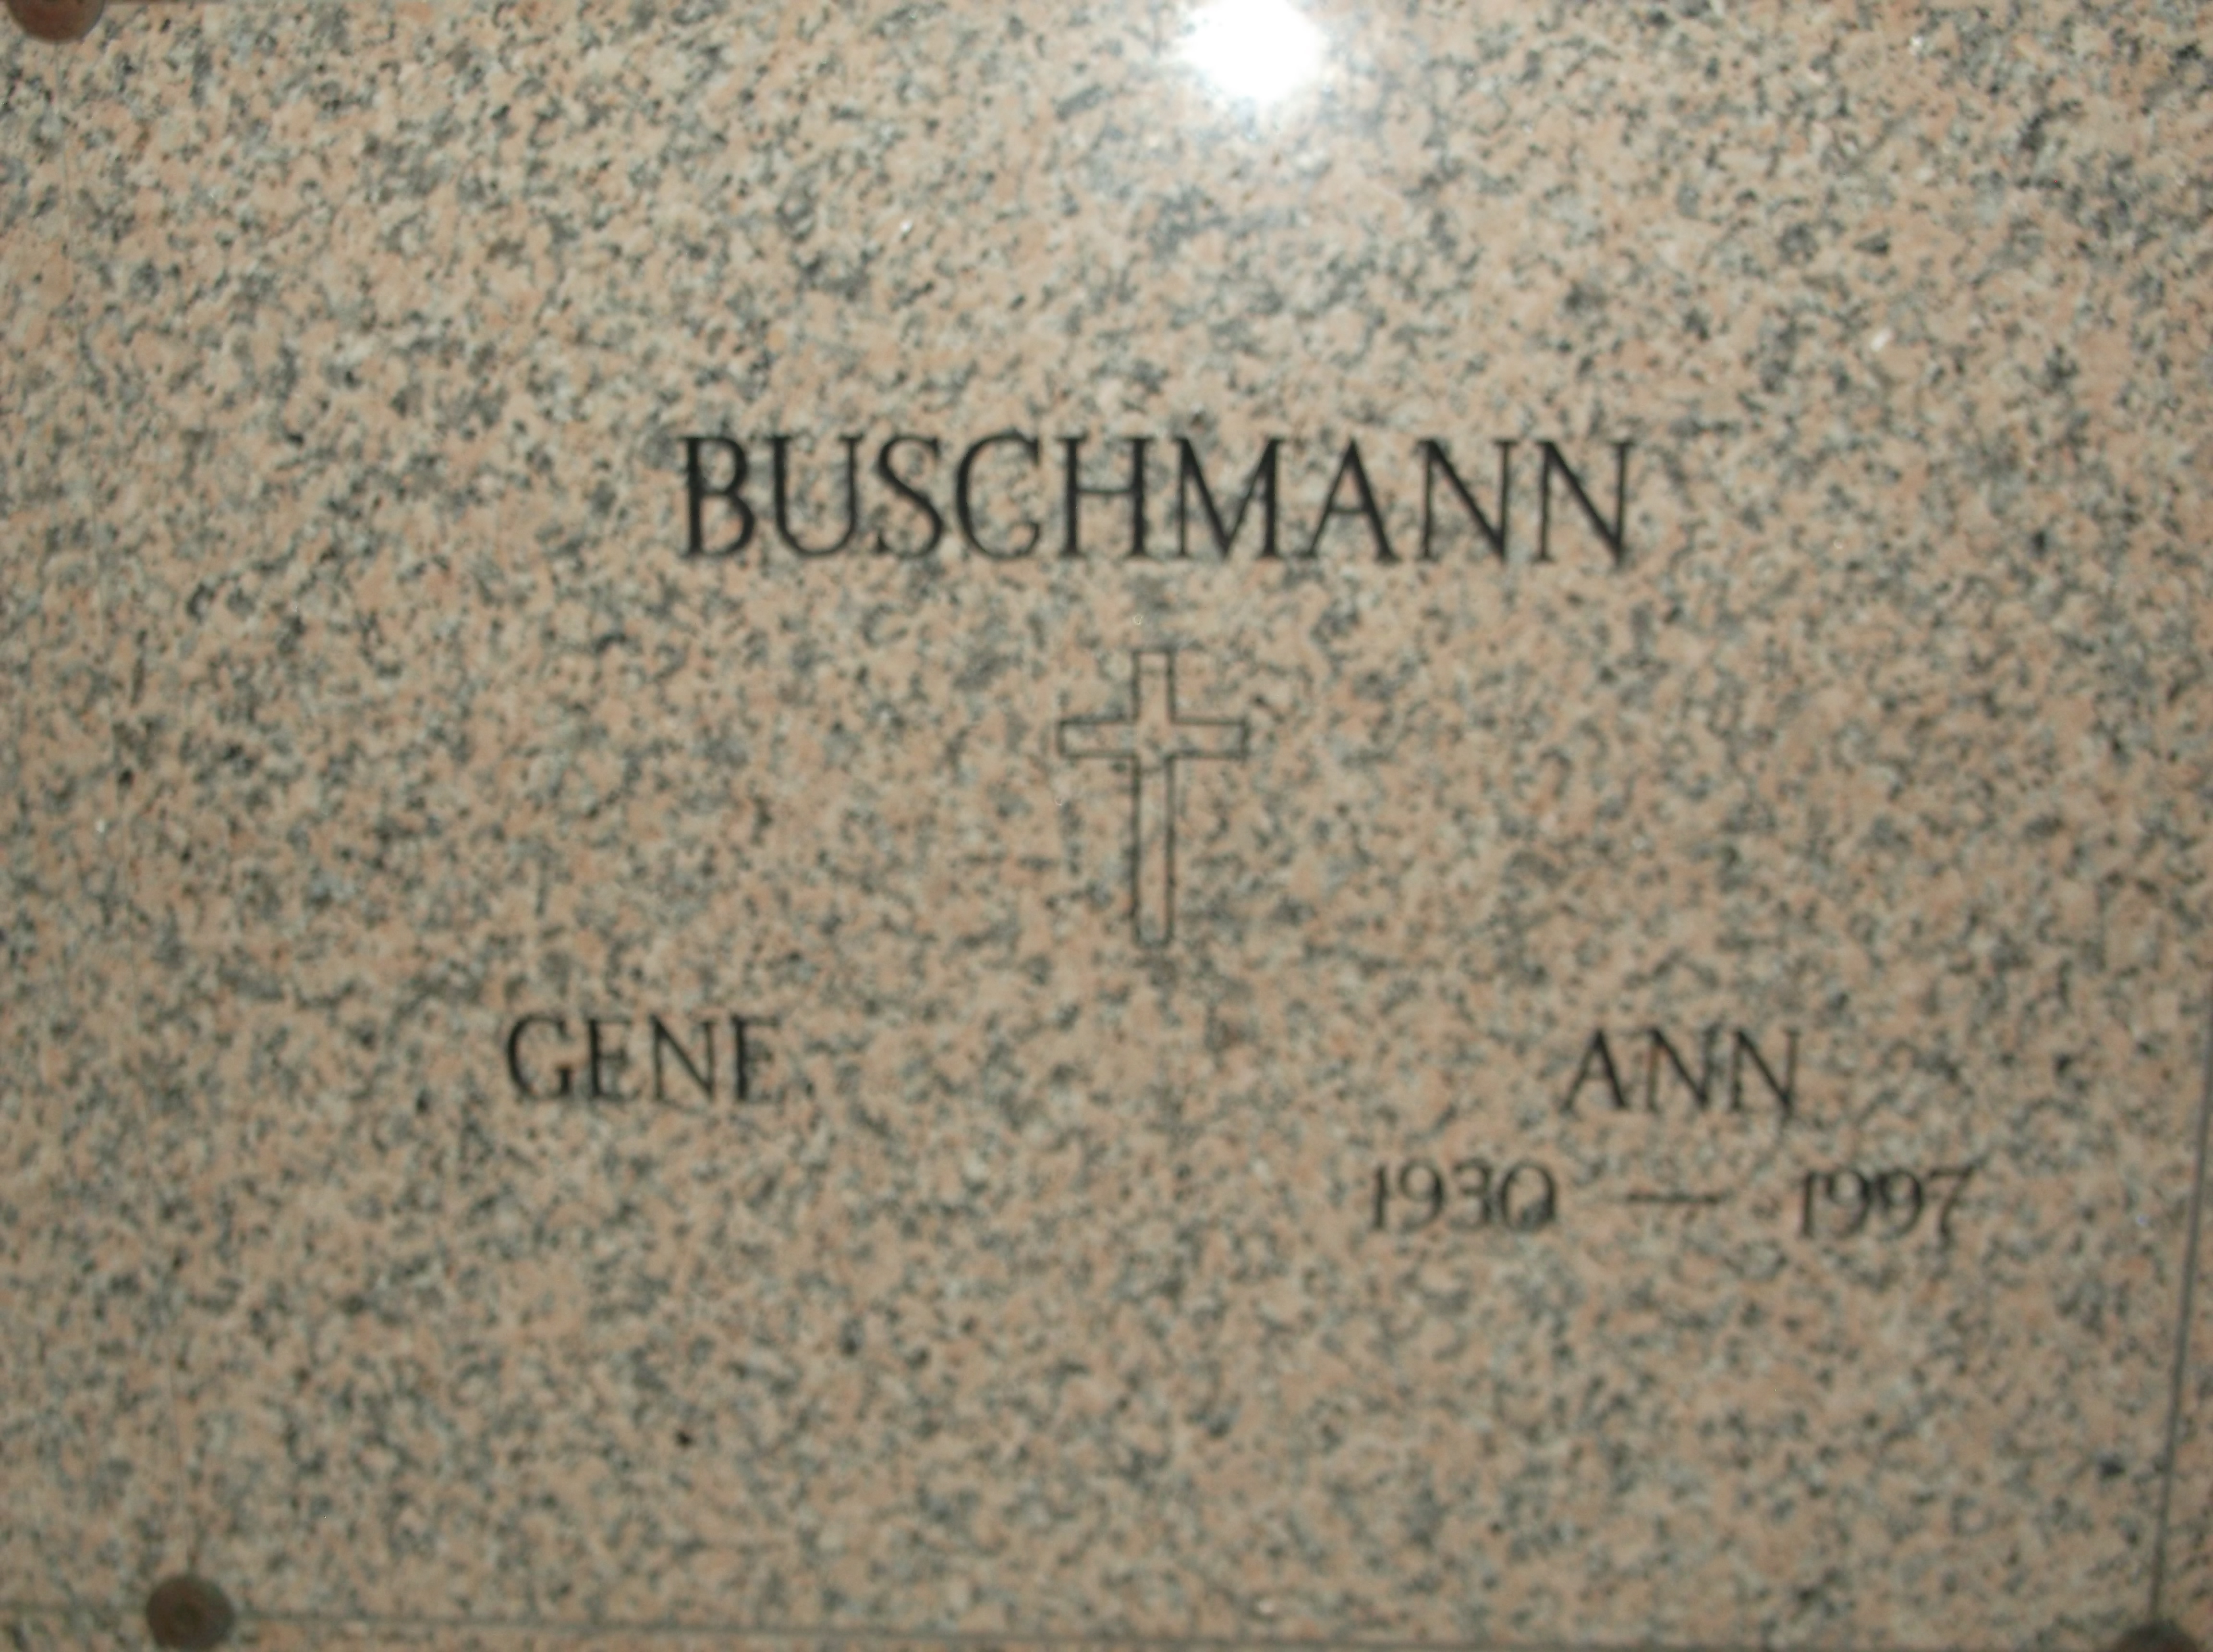 Ann Buschmann